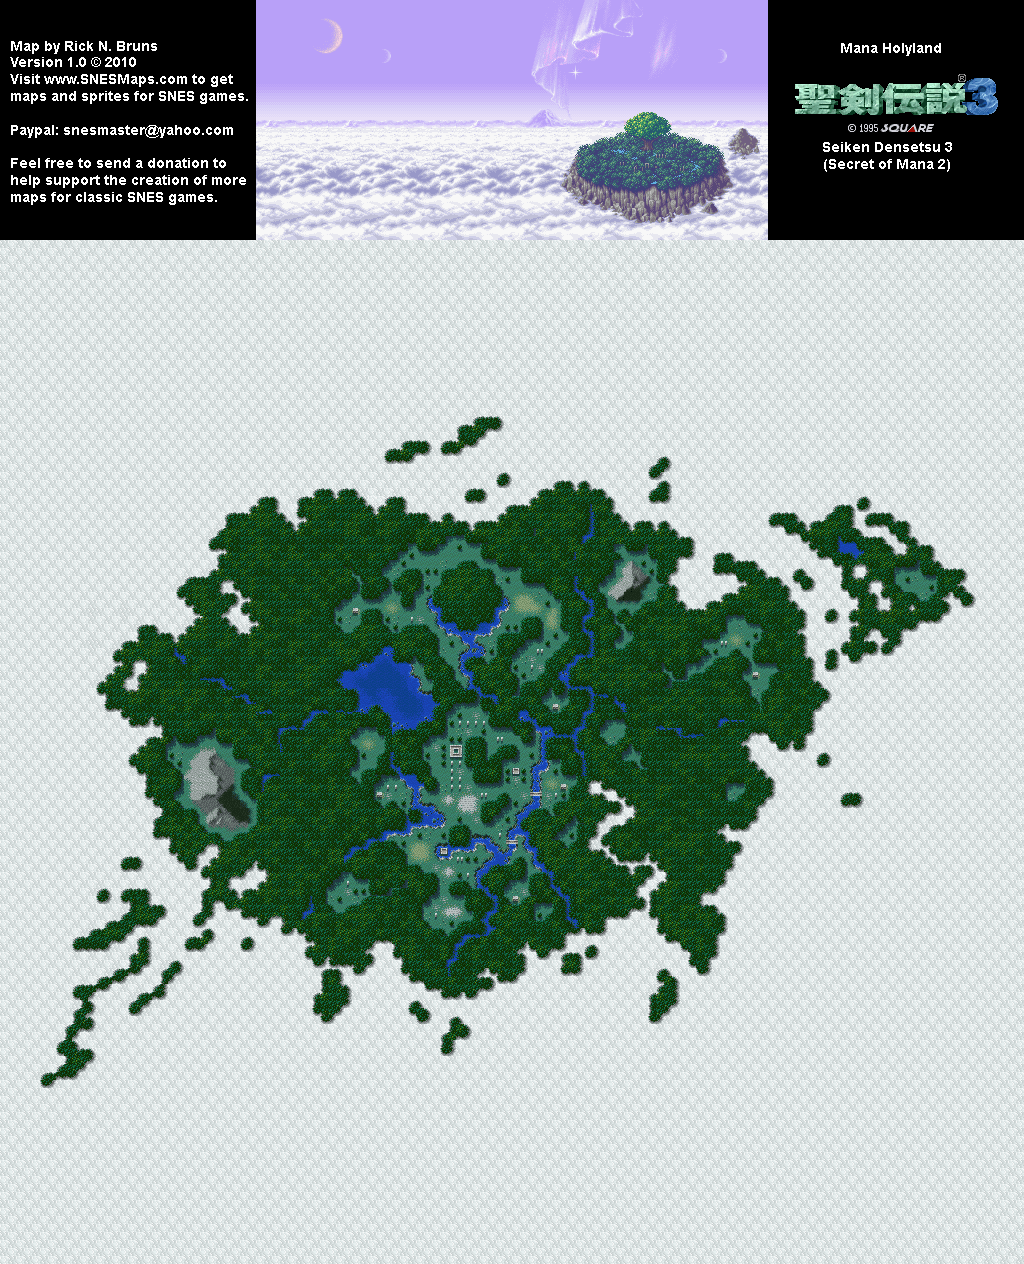 Seiken Densetsu 3 (Secret of Mana 2) - Holyland Overworld Super Nintendo SNES Map BG